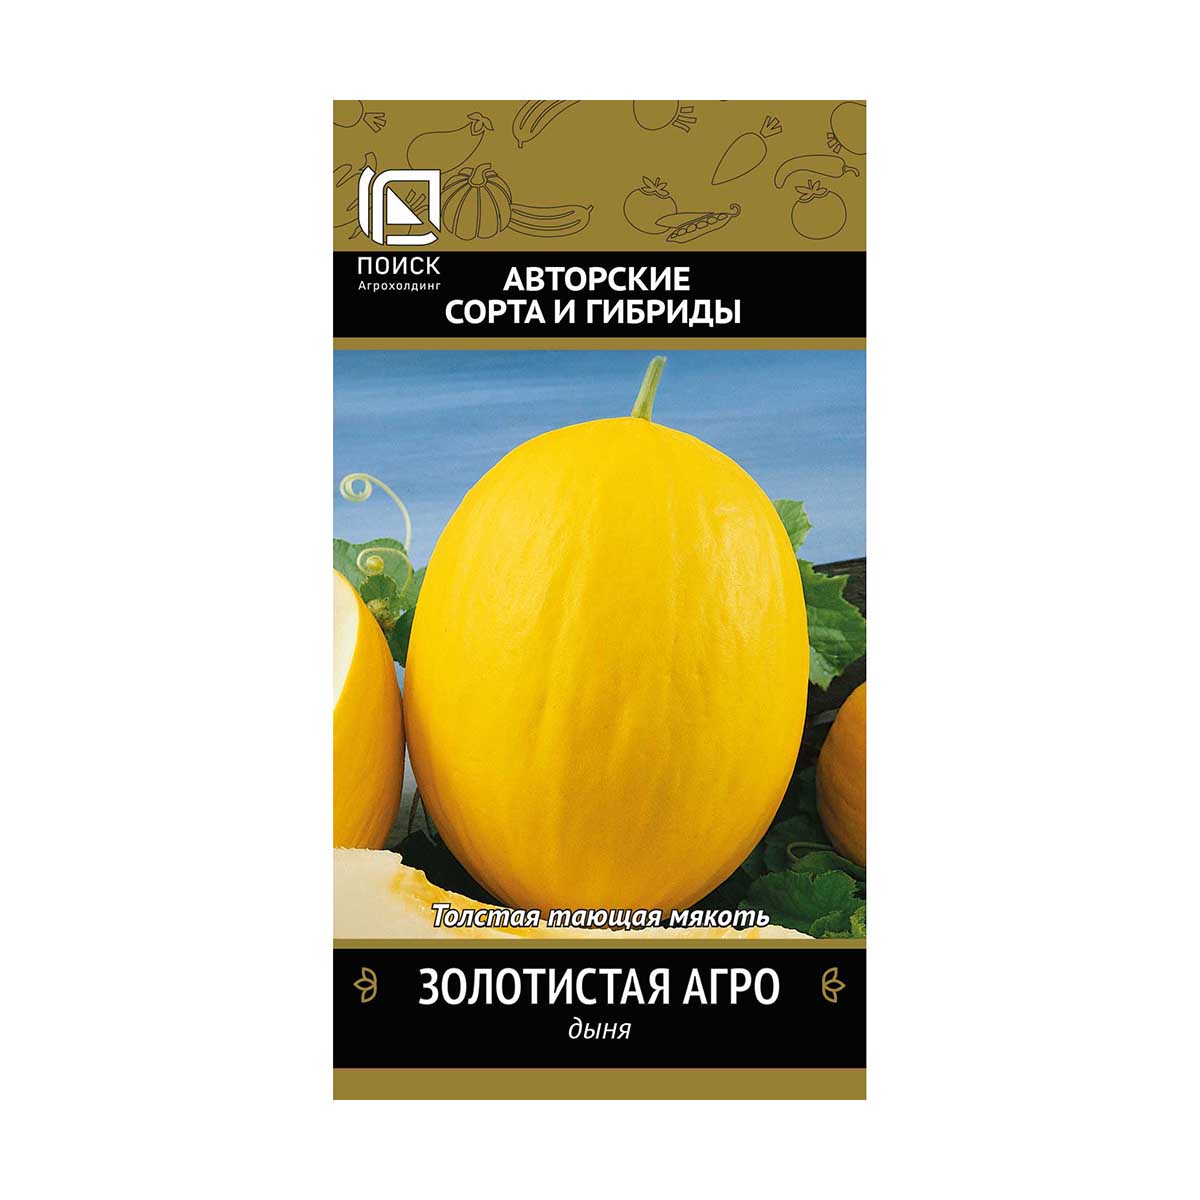 Семена дыня золотистая "агро" (а) 15 шт. (10/100) "авторские сорта и гибриды"